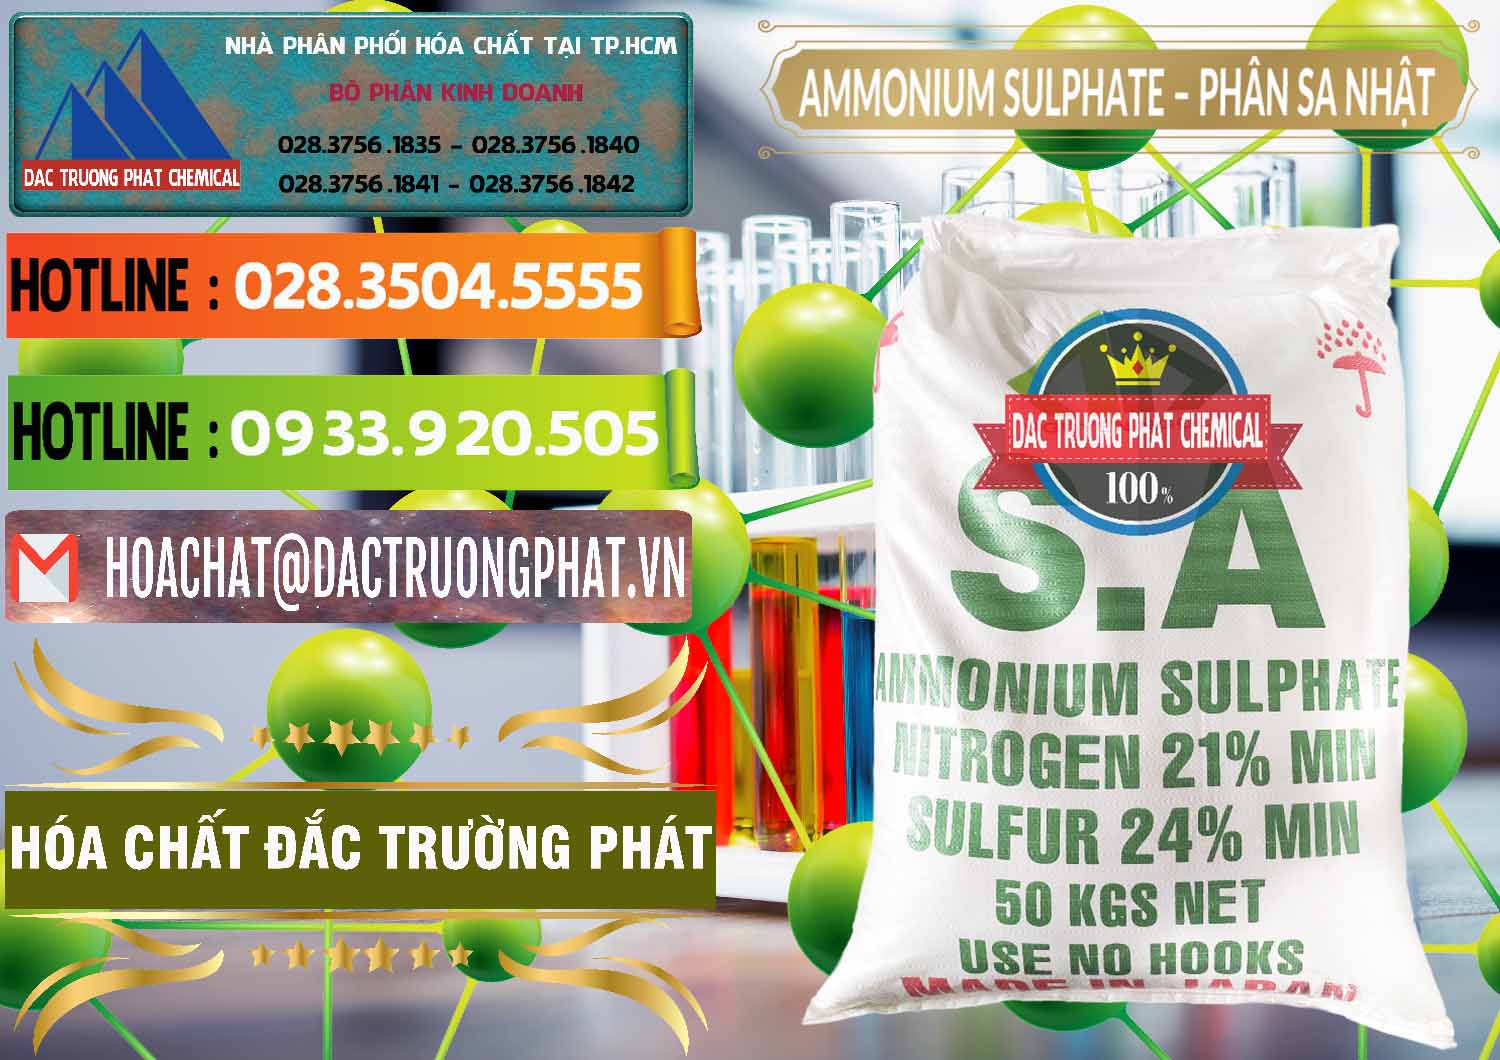 Nơi nhập khẩu & bán Ammonium Sulphate – Phân Sa Nhật Japan - 0023 - Công ty chuyên nhập khẩu ( phân phối ) hóa chất tại TP.HCM - cungcaphoachat.com.vn